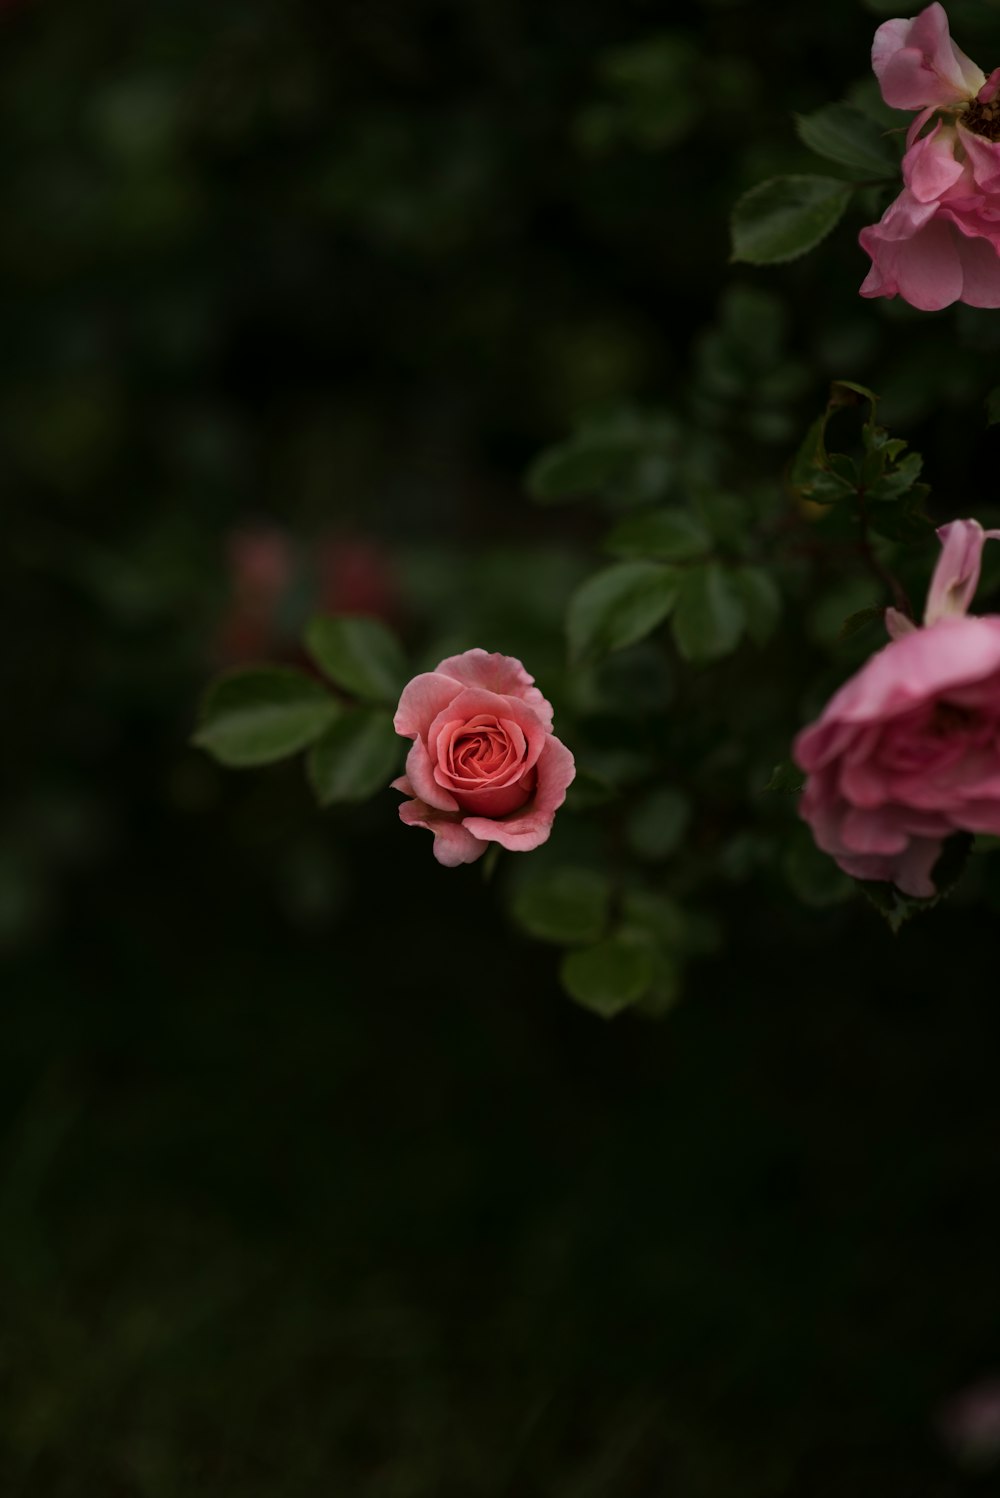 Trải nghiệm tất cả sự tình cảm và nhuần nhuyễn của hoa hồng màu hồng mê hoặc trong hình ảnh này. Đắm mình trong khung cảnh tuyệt đẹp này khi khoe rực rỡ và tươi sáng trên màn hình điện thoại của bạn. 